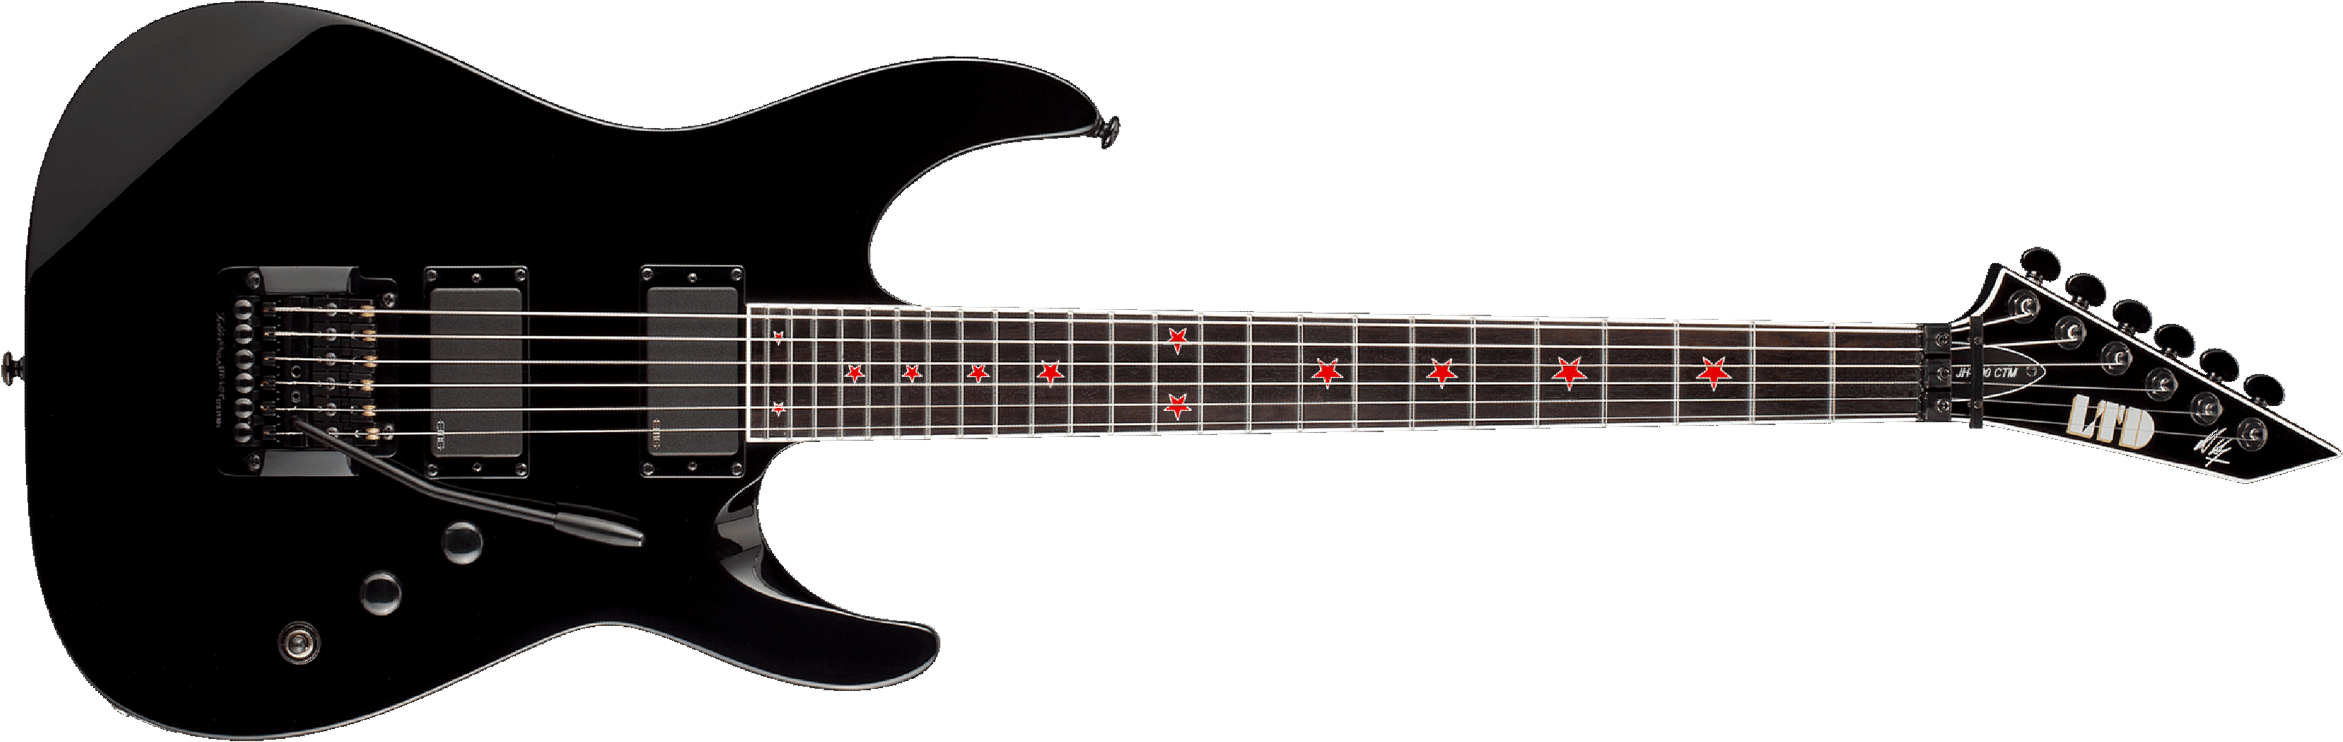 Ltd Jeff Hanneman Jh-600 Signature Hh Emg Khaler Eb - Black - Str shape electric guitar - Main picture